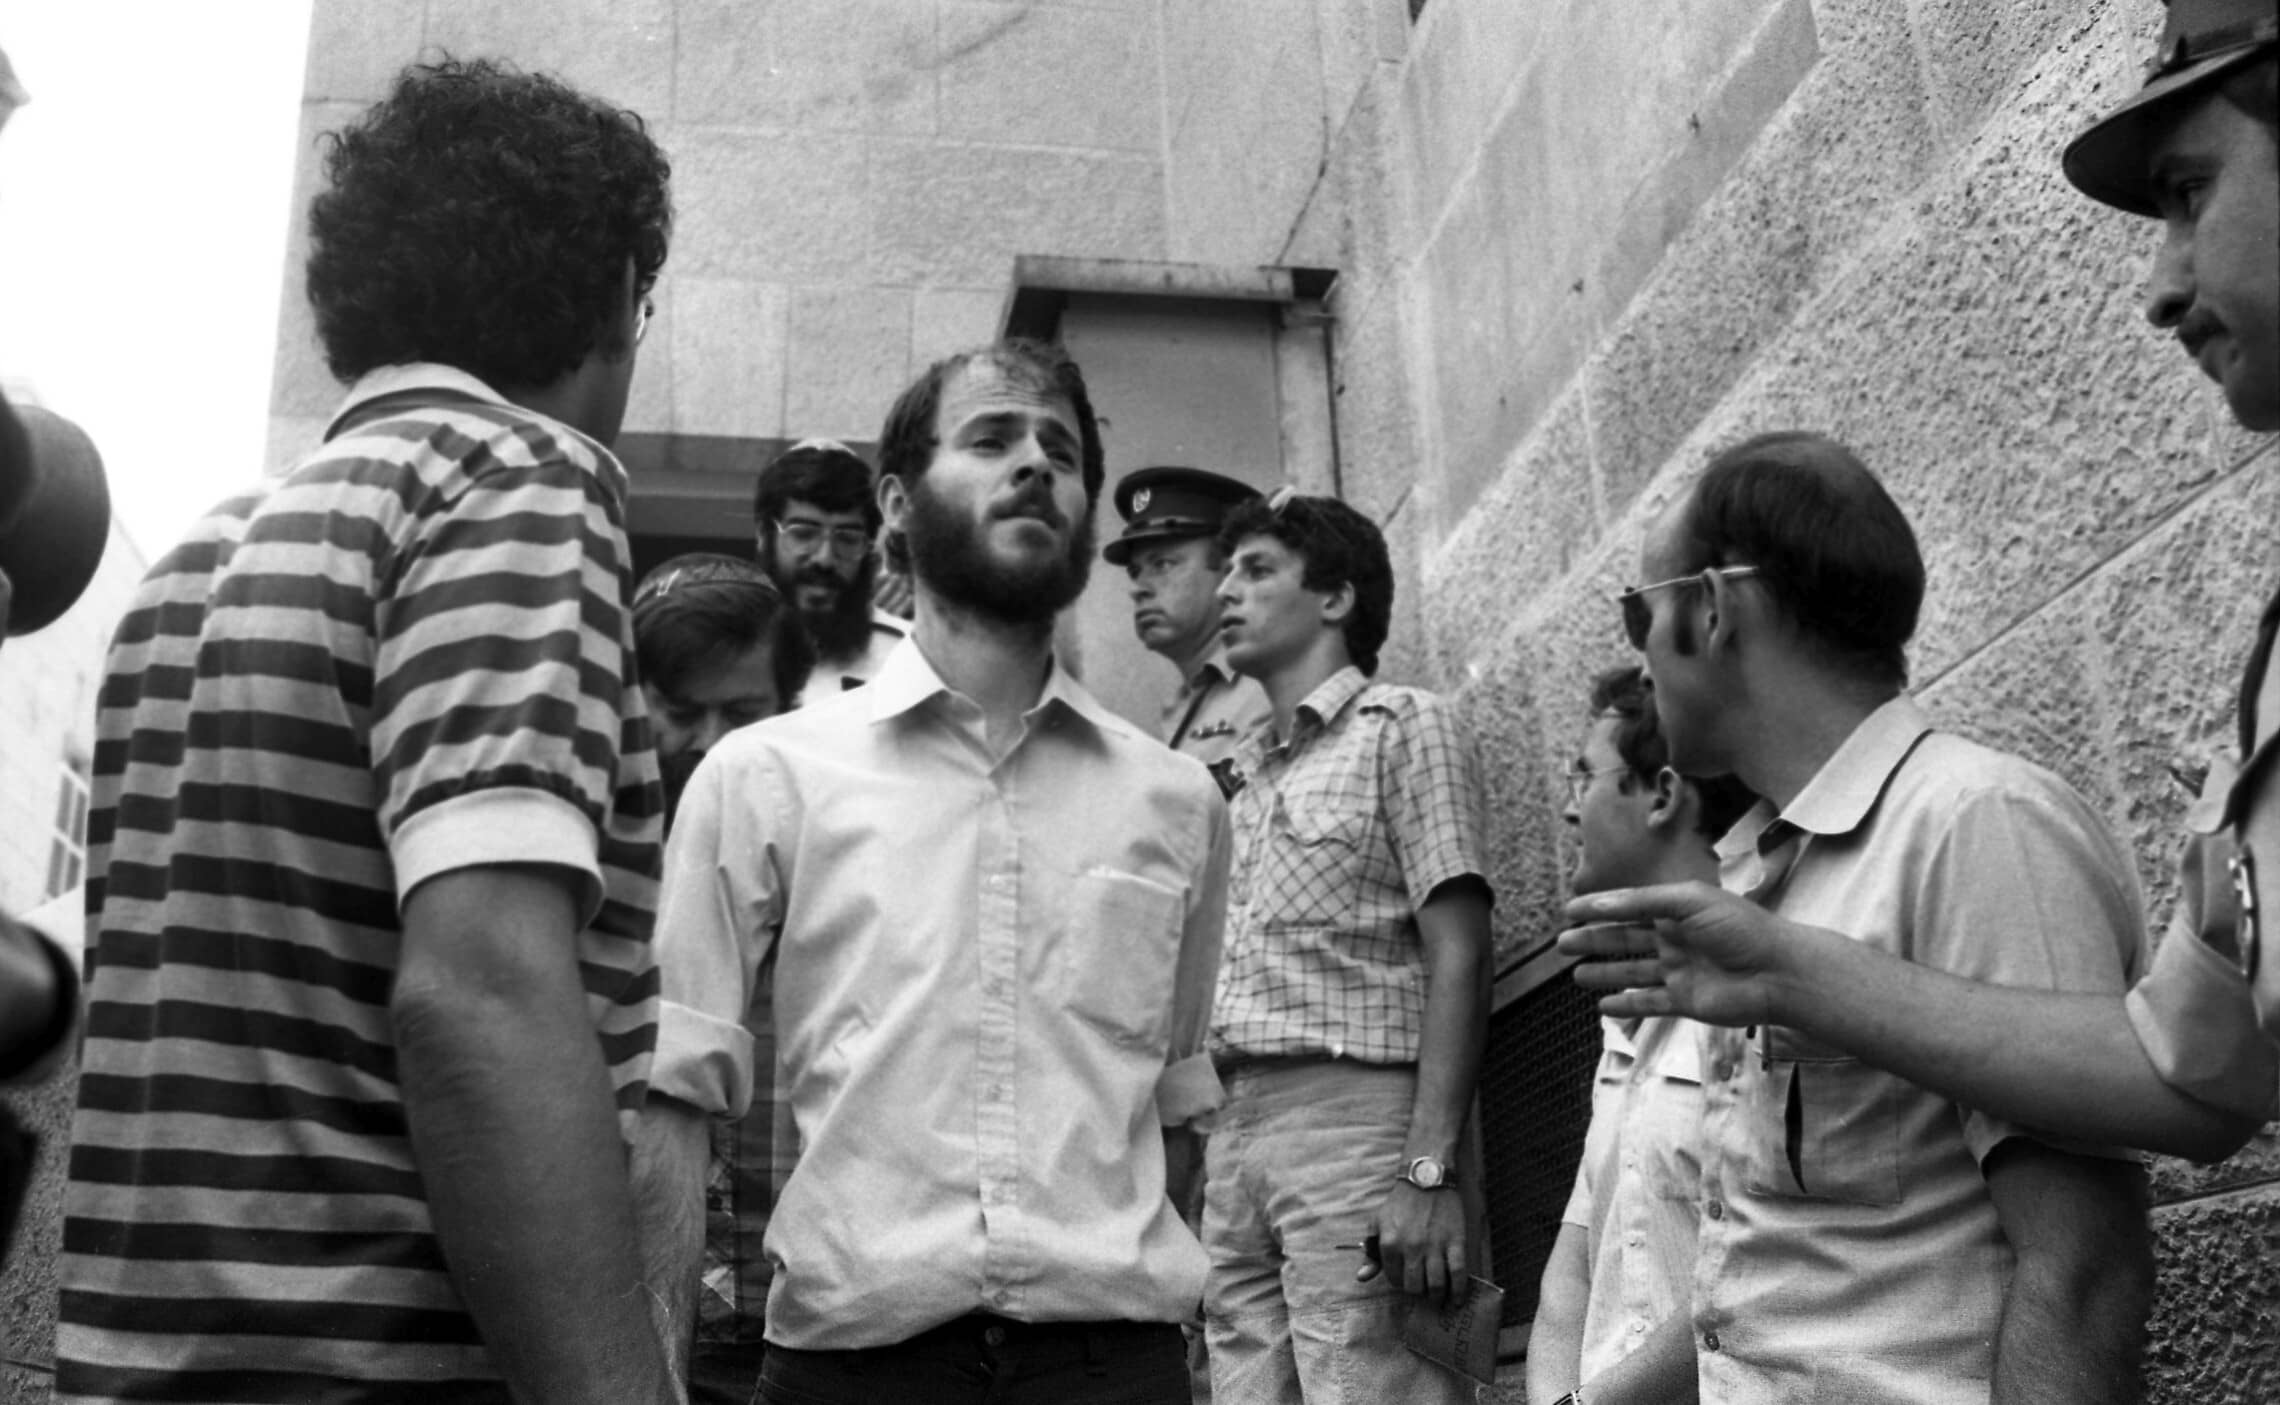 חגי סגל, בן 27 בעת מעצרו ב-1984 בהתנחלות עופרה (צילום: זאב אקרמן, IPPA, ארכיון דן הדני, הספרייה הלאומית)